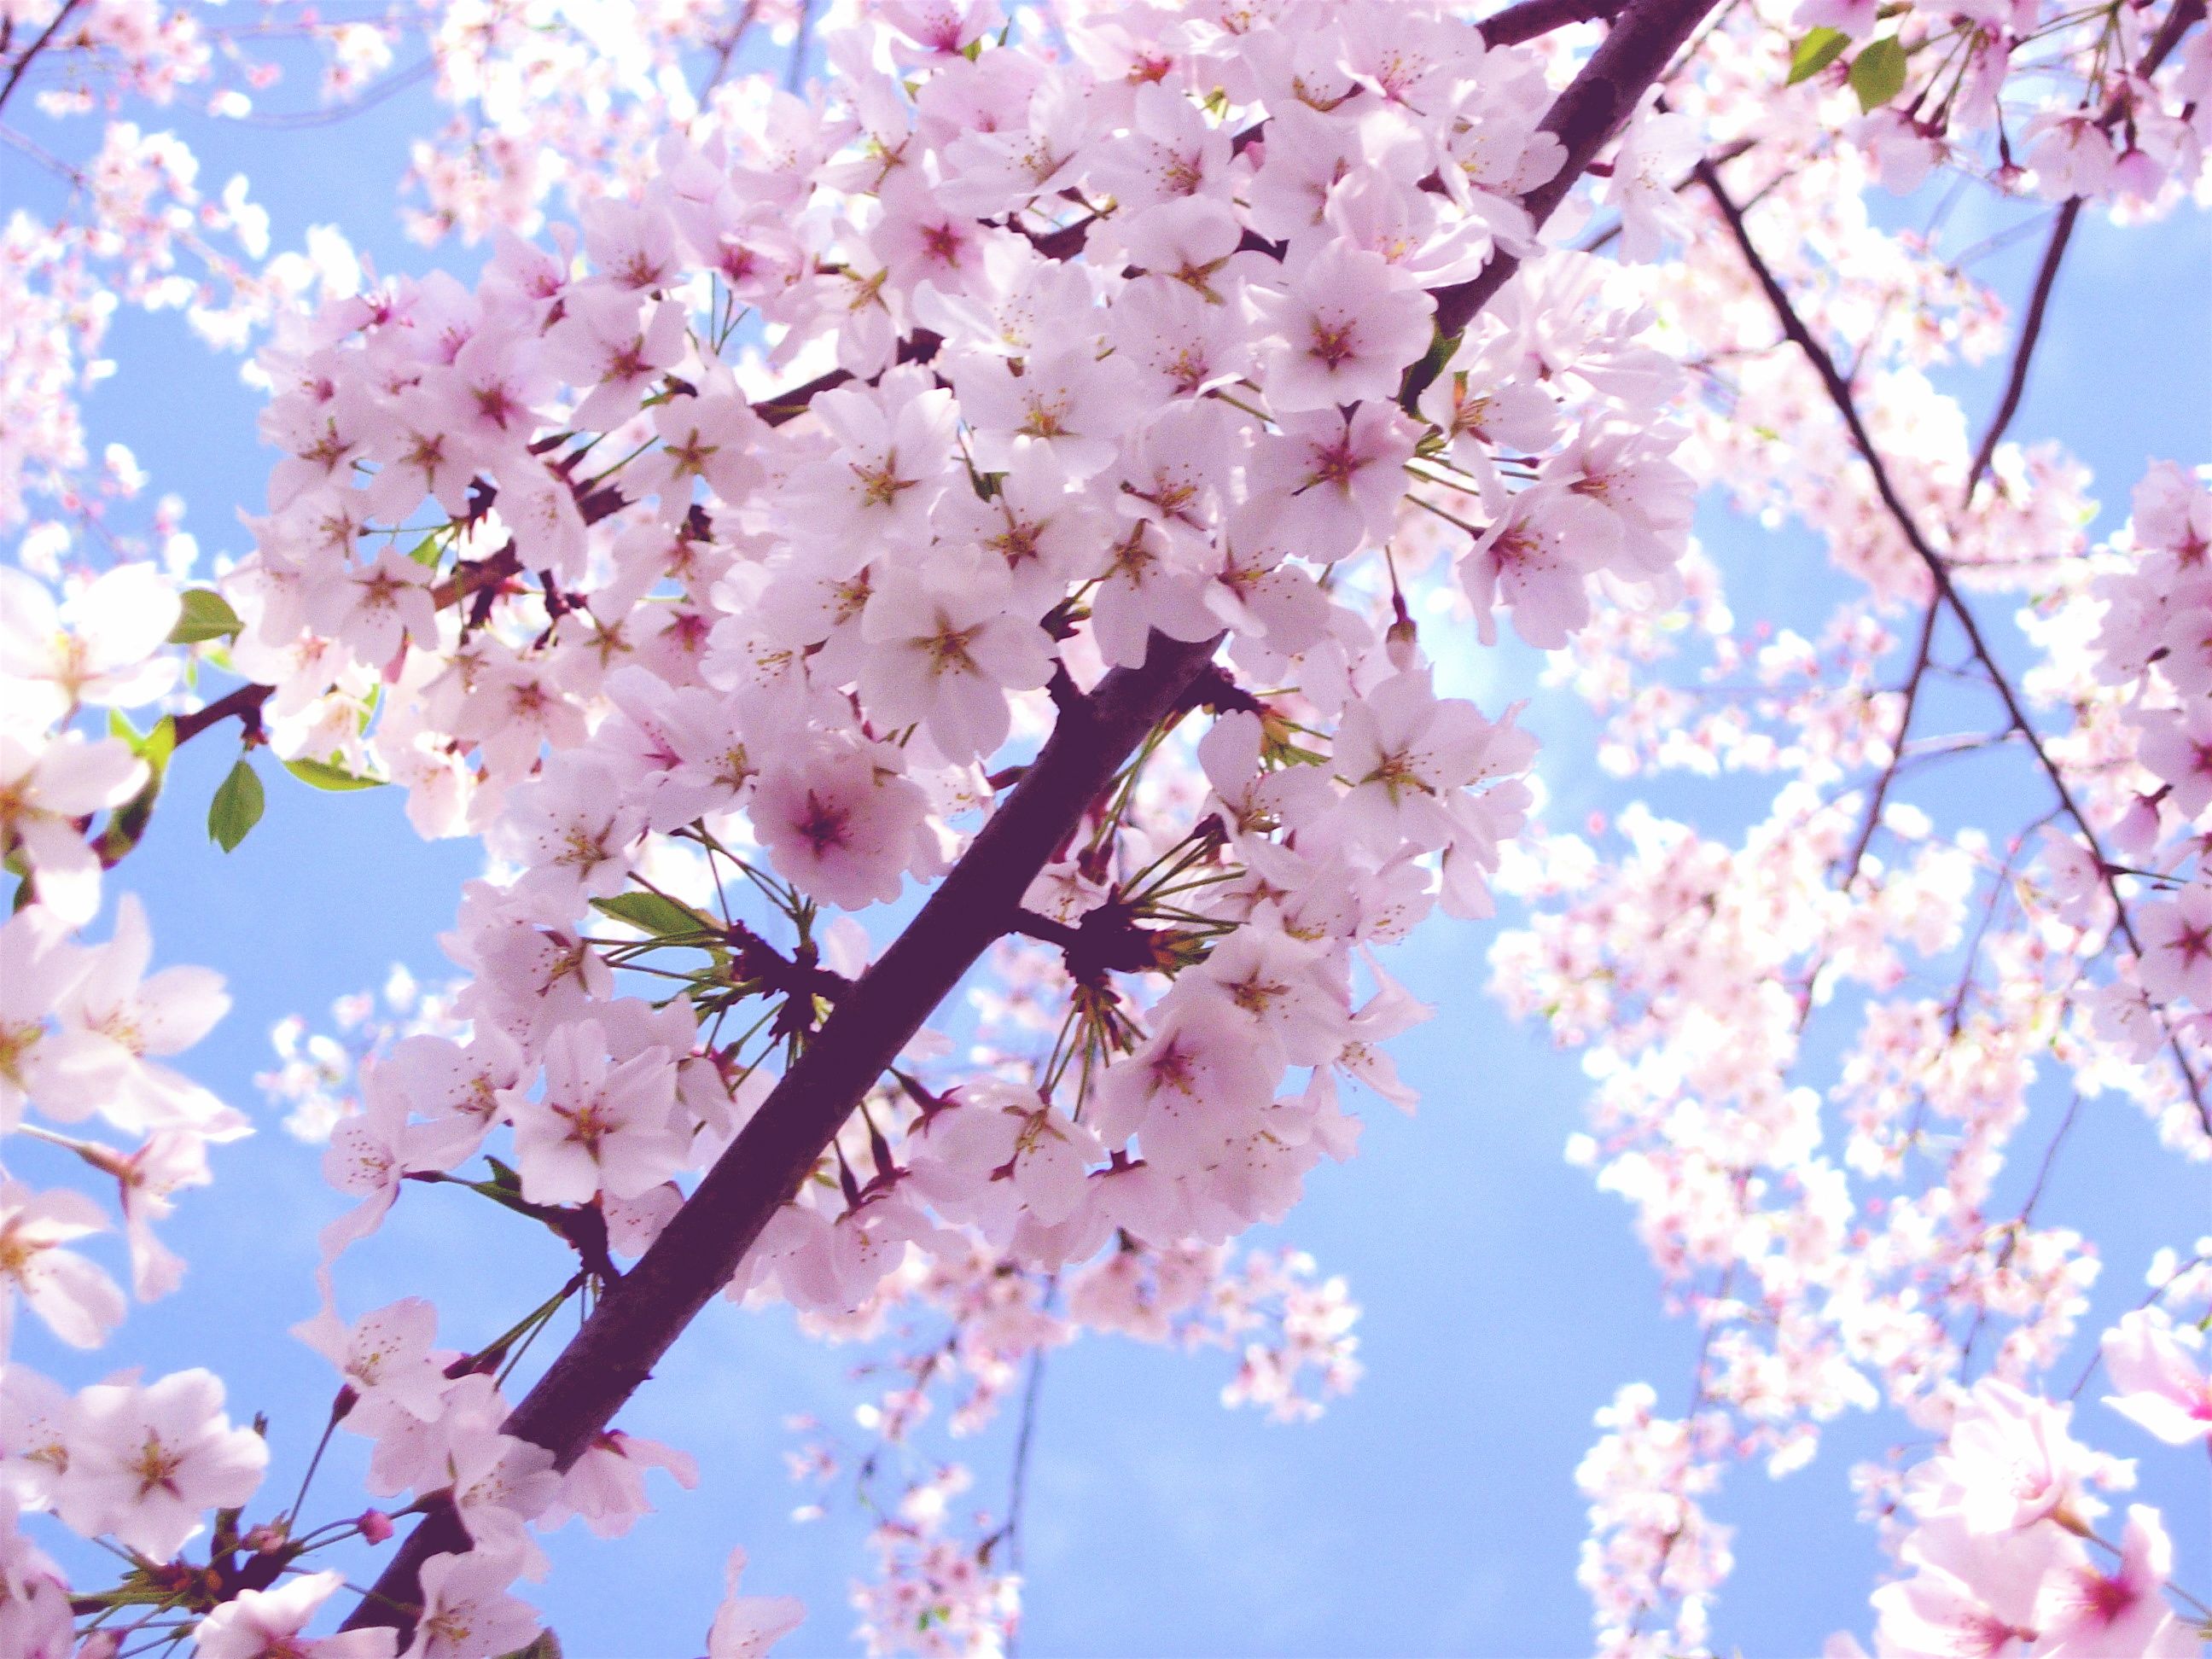 عکس استوک از قشنگترین شکوفه های صورتی بهاری بر فراز آسمان آبی